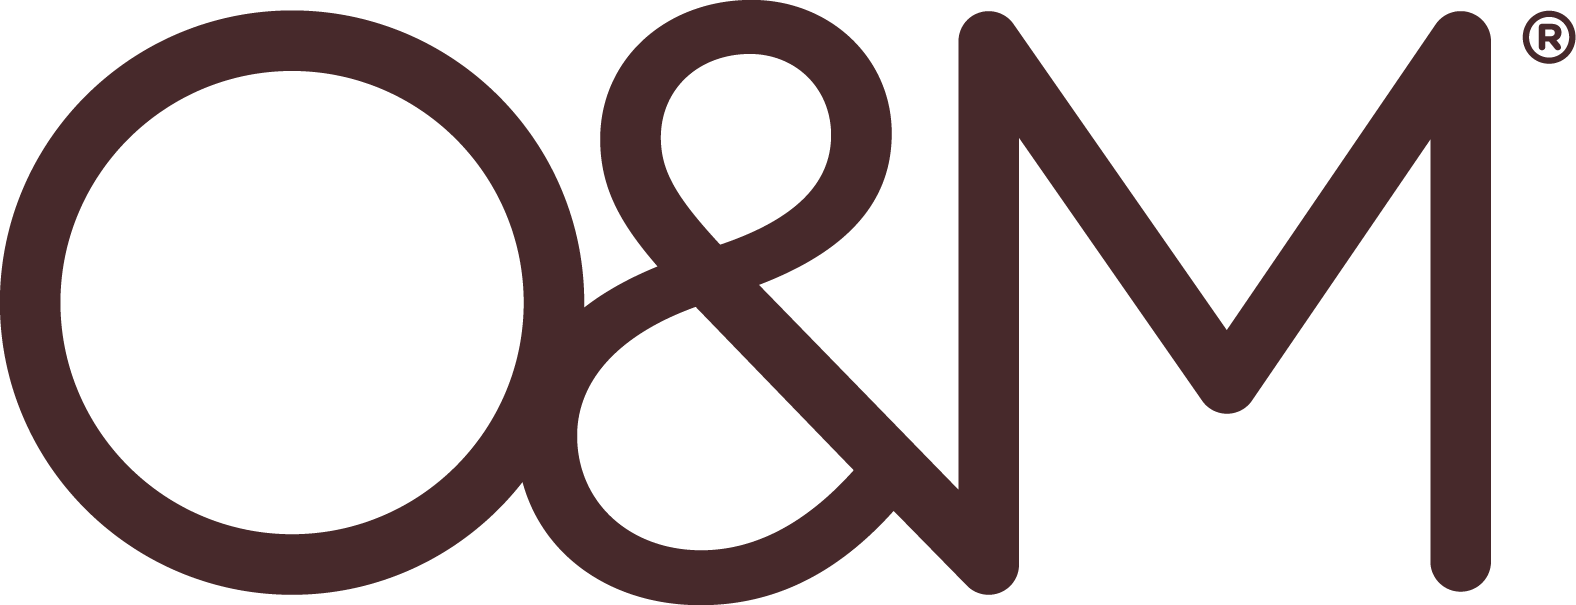 O&M Original & Mineral Logo